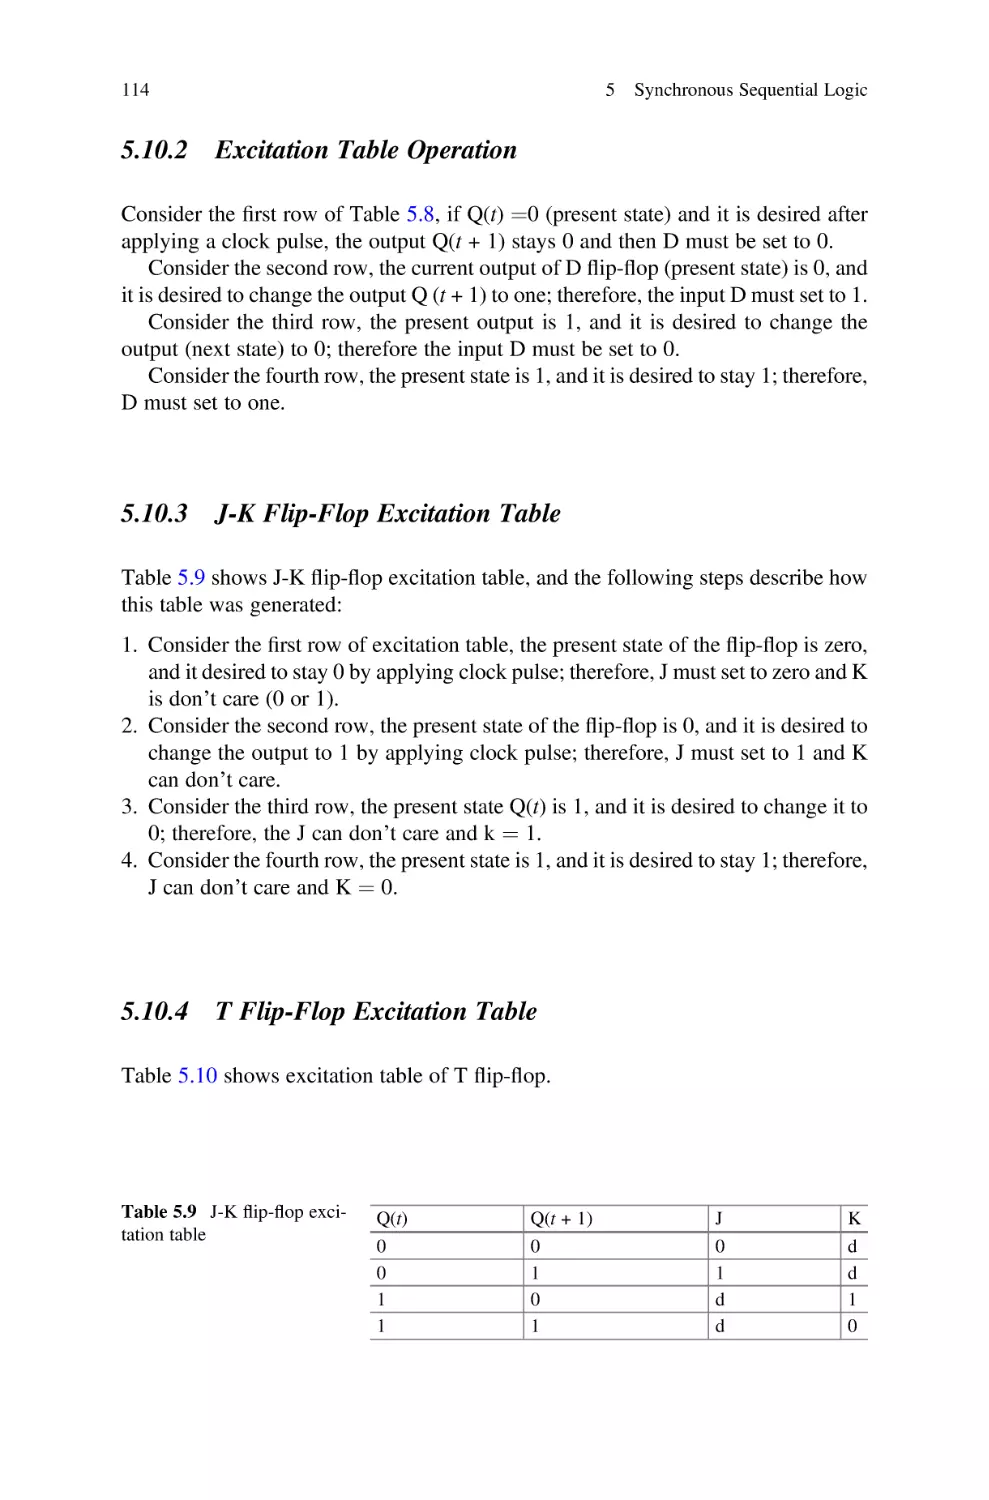 5.10.2 Excitation Table Operation
5.10.3 J-K Flip-Flop Excitation Table
5.10.4 T Flip-Flop Excitation Table